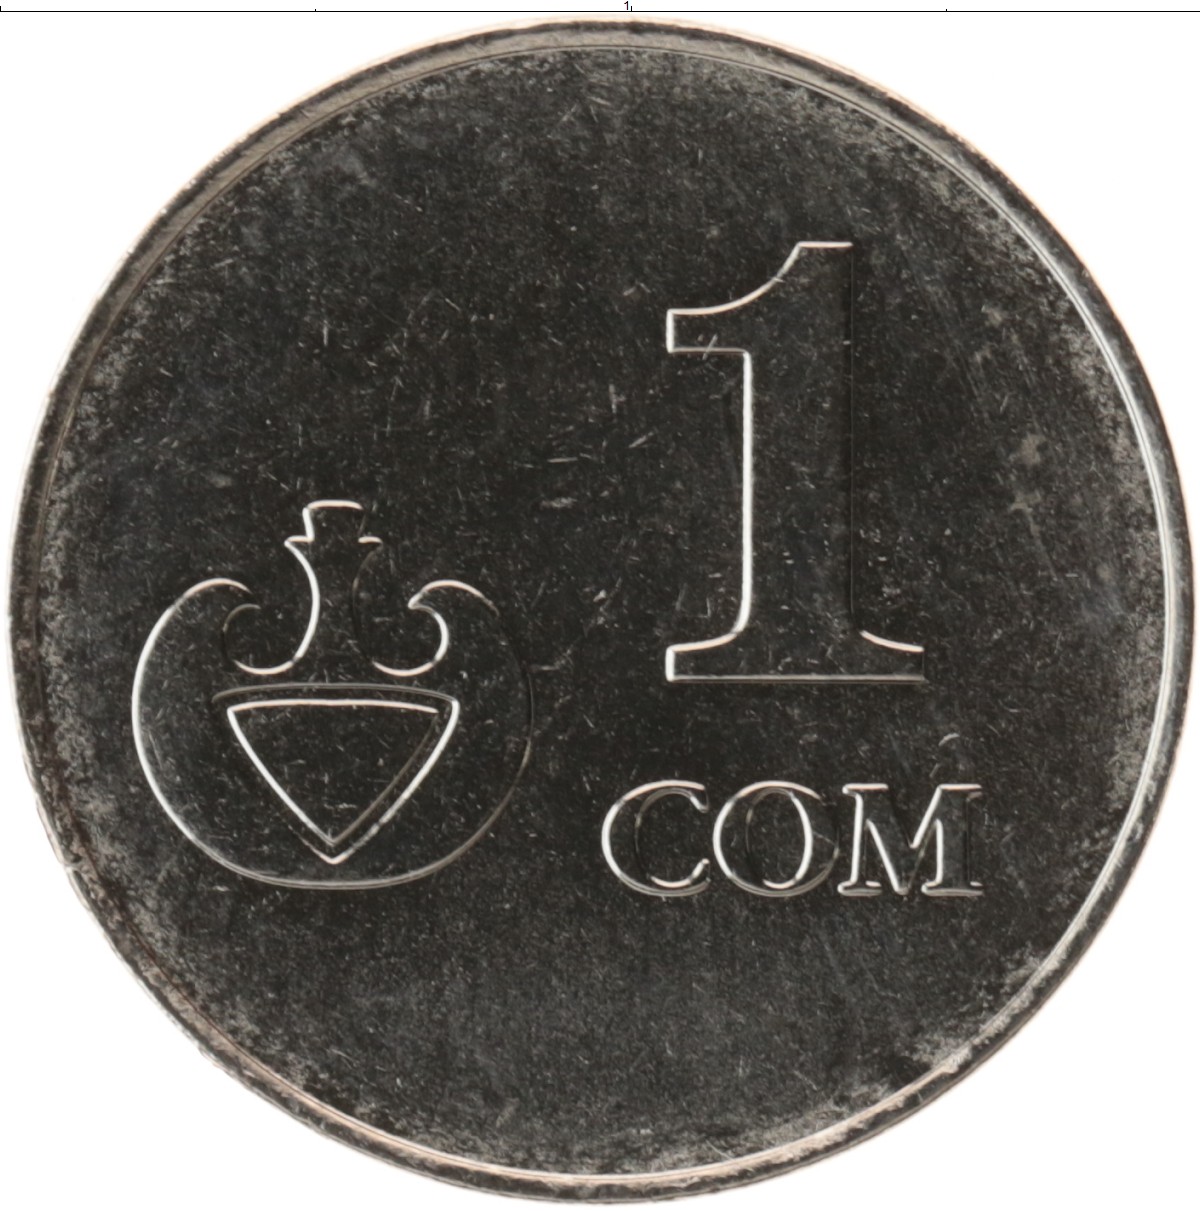 1 рубль в сом. Монета Республики кыргыз 2008. 1 Сом монета. Киргизия 1 сом 2008. Кыргызский сом монеты.